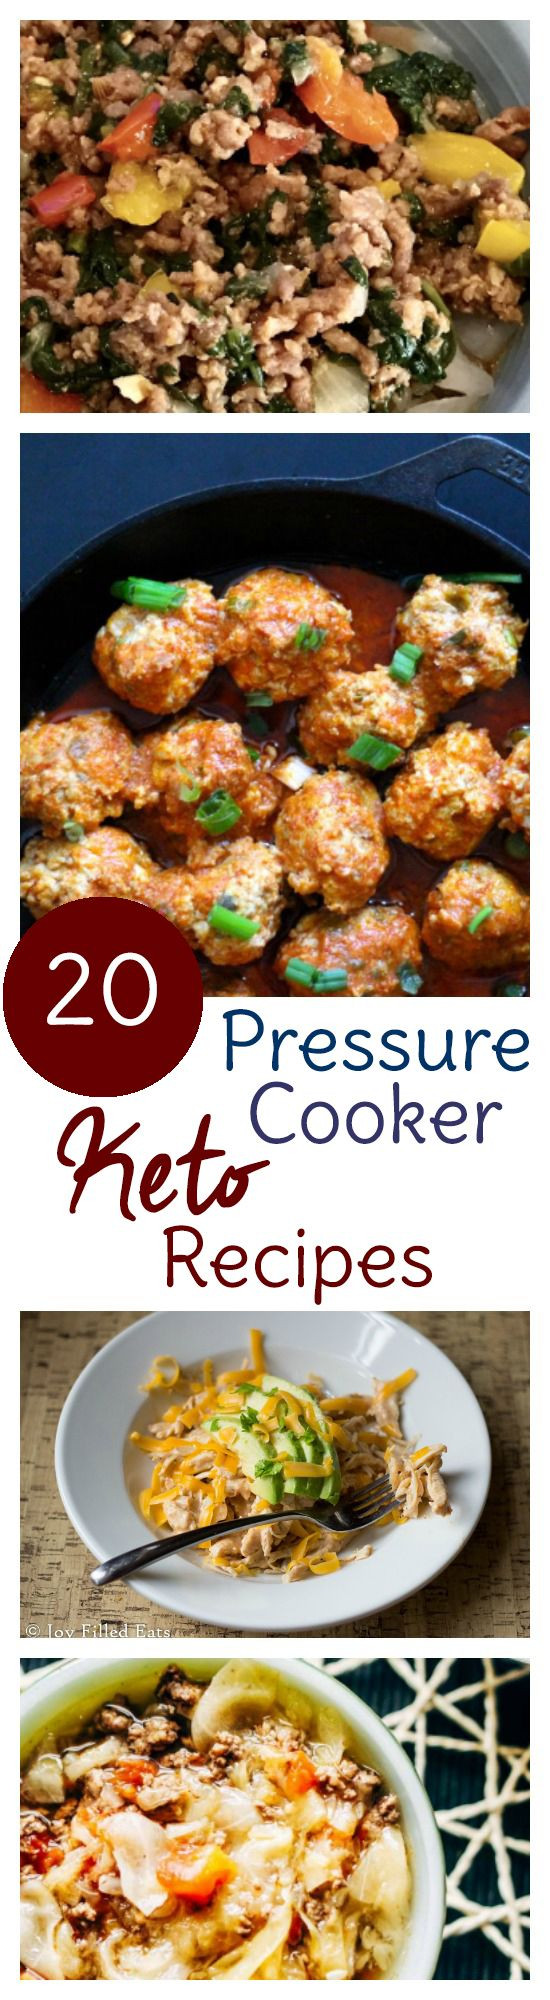 Low Fat Pressure Cooker Recipes
 40 Instant Pot Keto Recipes Keto Recipes